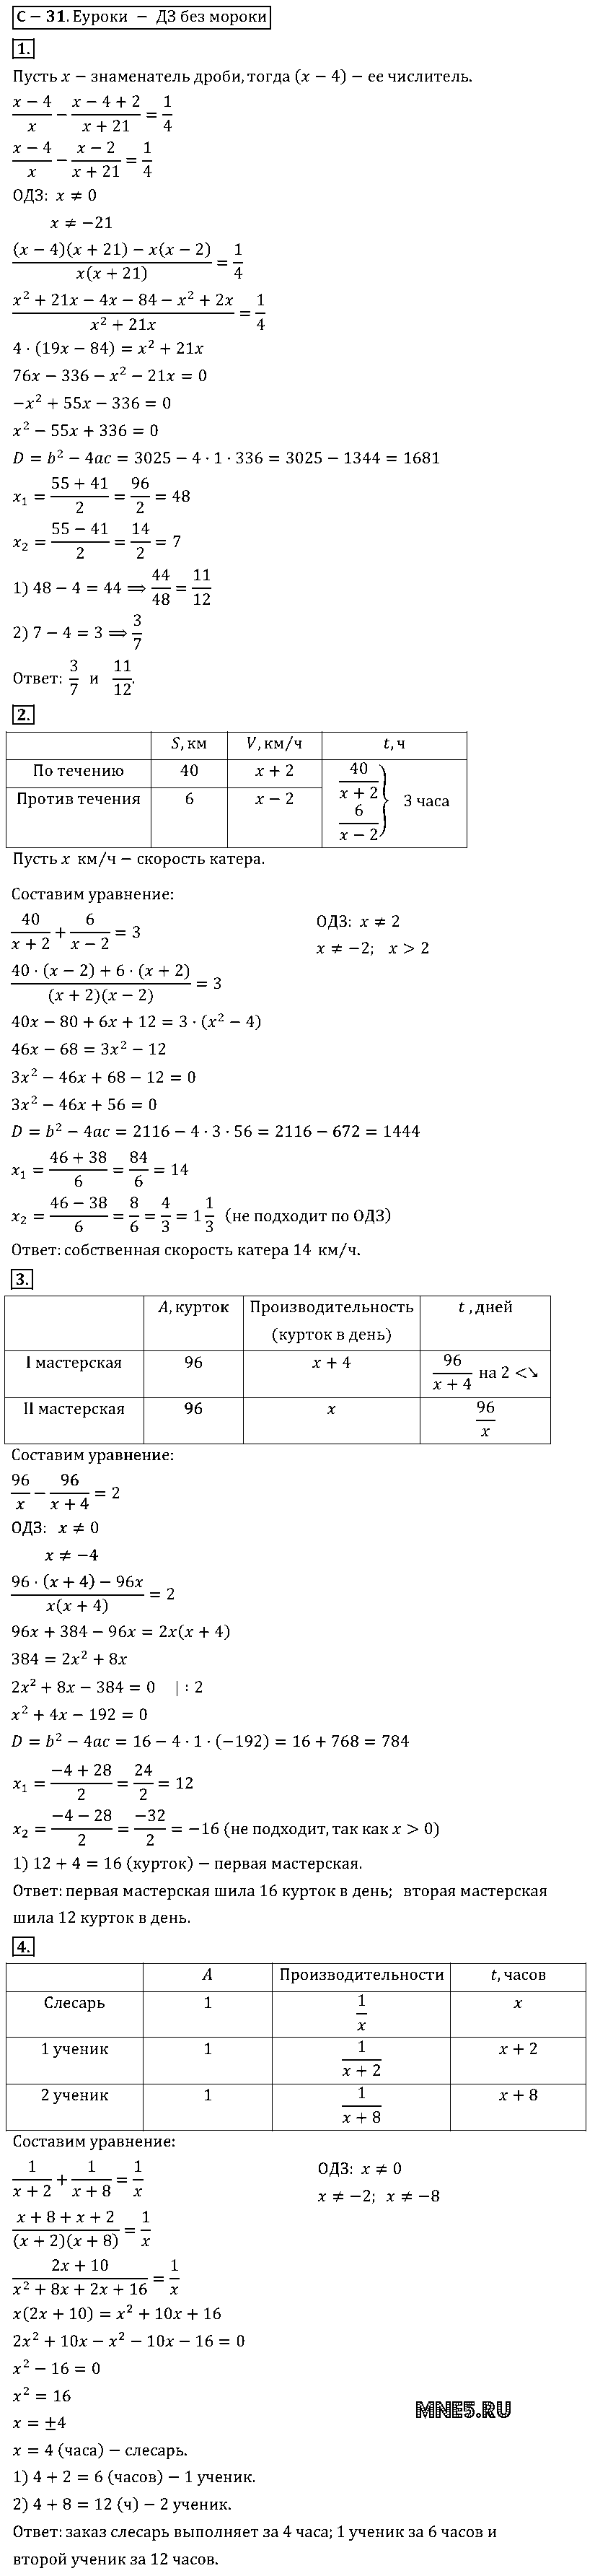 ГДЗ Алгебра 8 класс - С-30(31). Решение задач с помощью рациональных уравнений